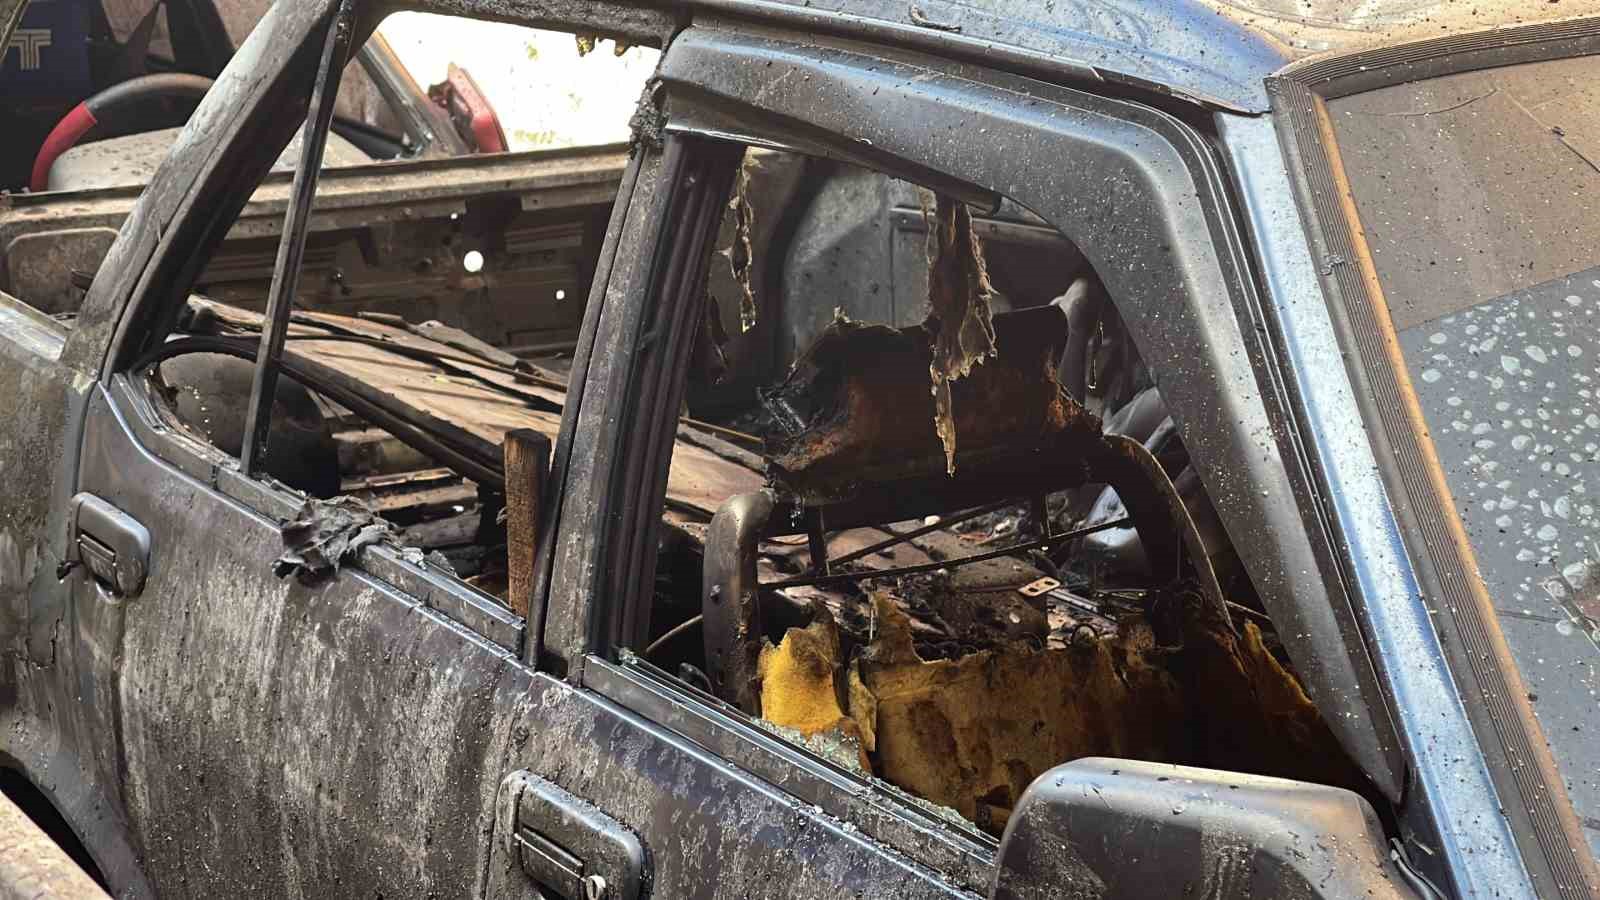 Rize’de park halindeki 2 otomobil yandı
